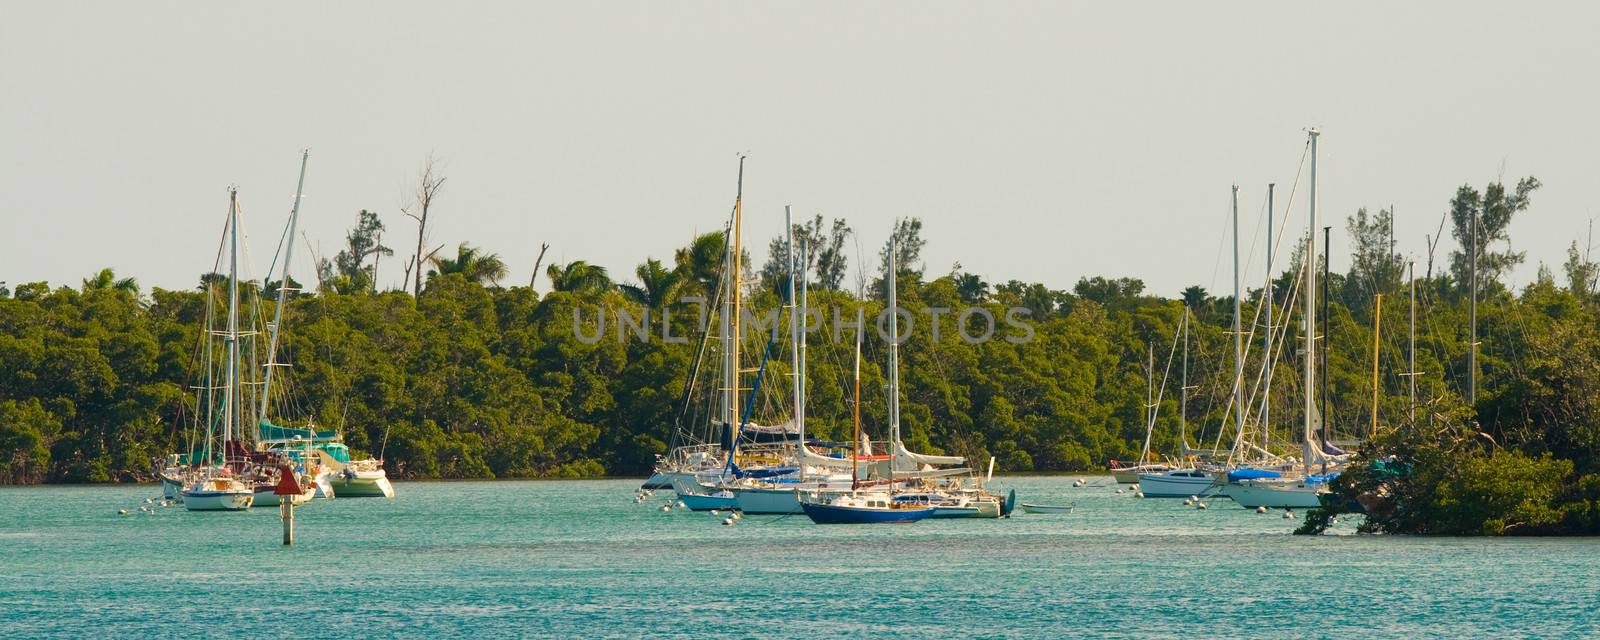 Boats in an Atlantic ocean, Miami, Miami-Dade County, Florida, USA